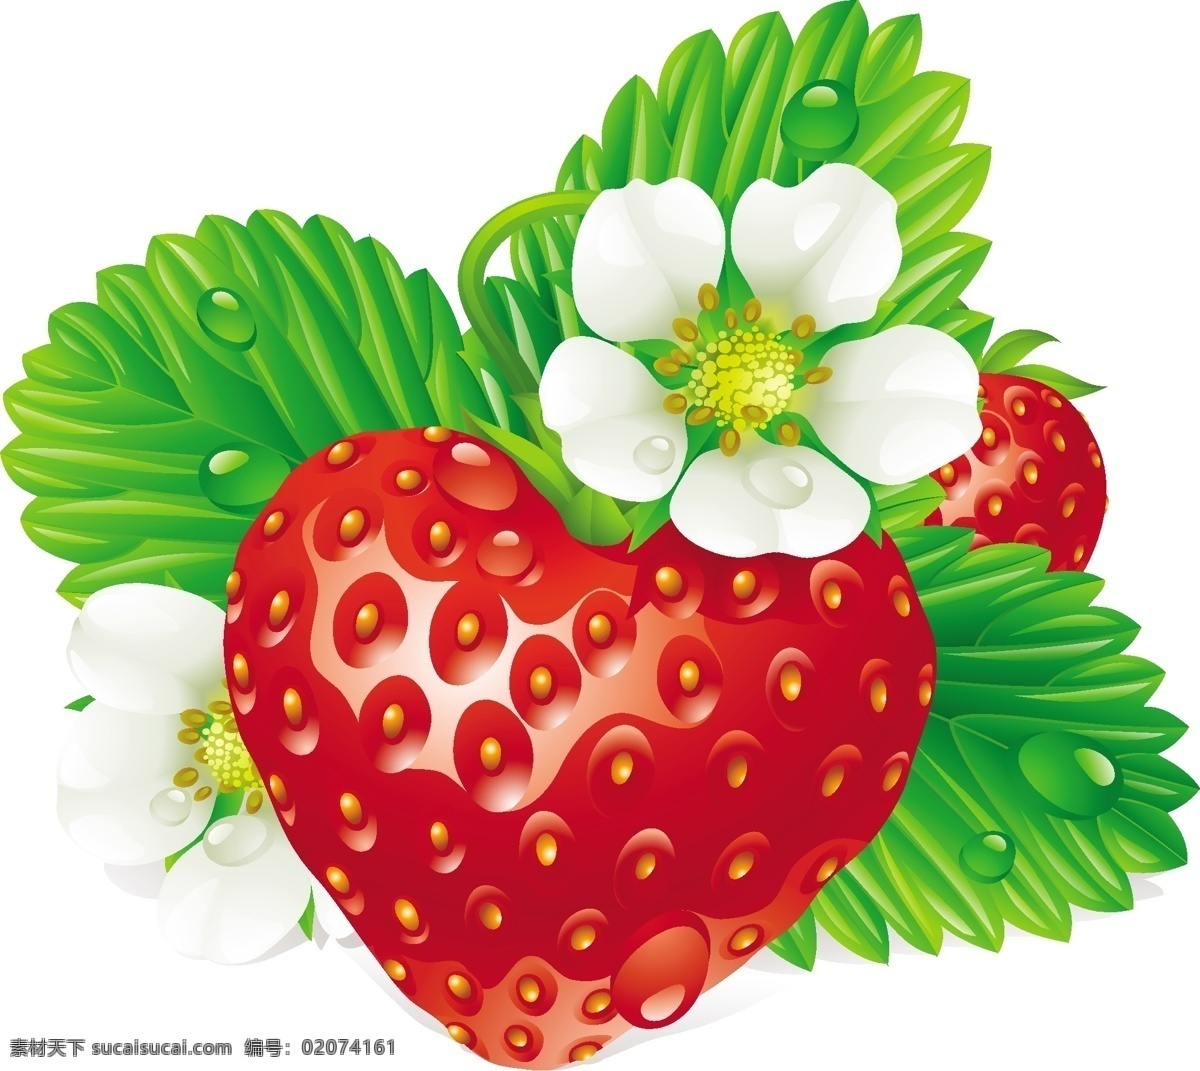 背景 草莓 潮流 底纹 花朵 花卉 绿色 绿叶 梦幻 鲜花 水珠 水滴 矢量 模板下载 清新 时尚 水果 生物世界 矢量图 日常生活